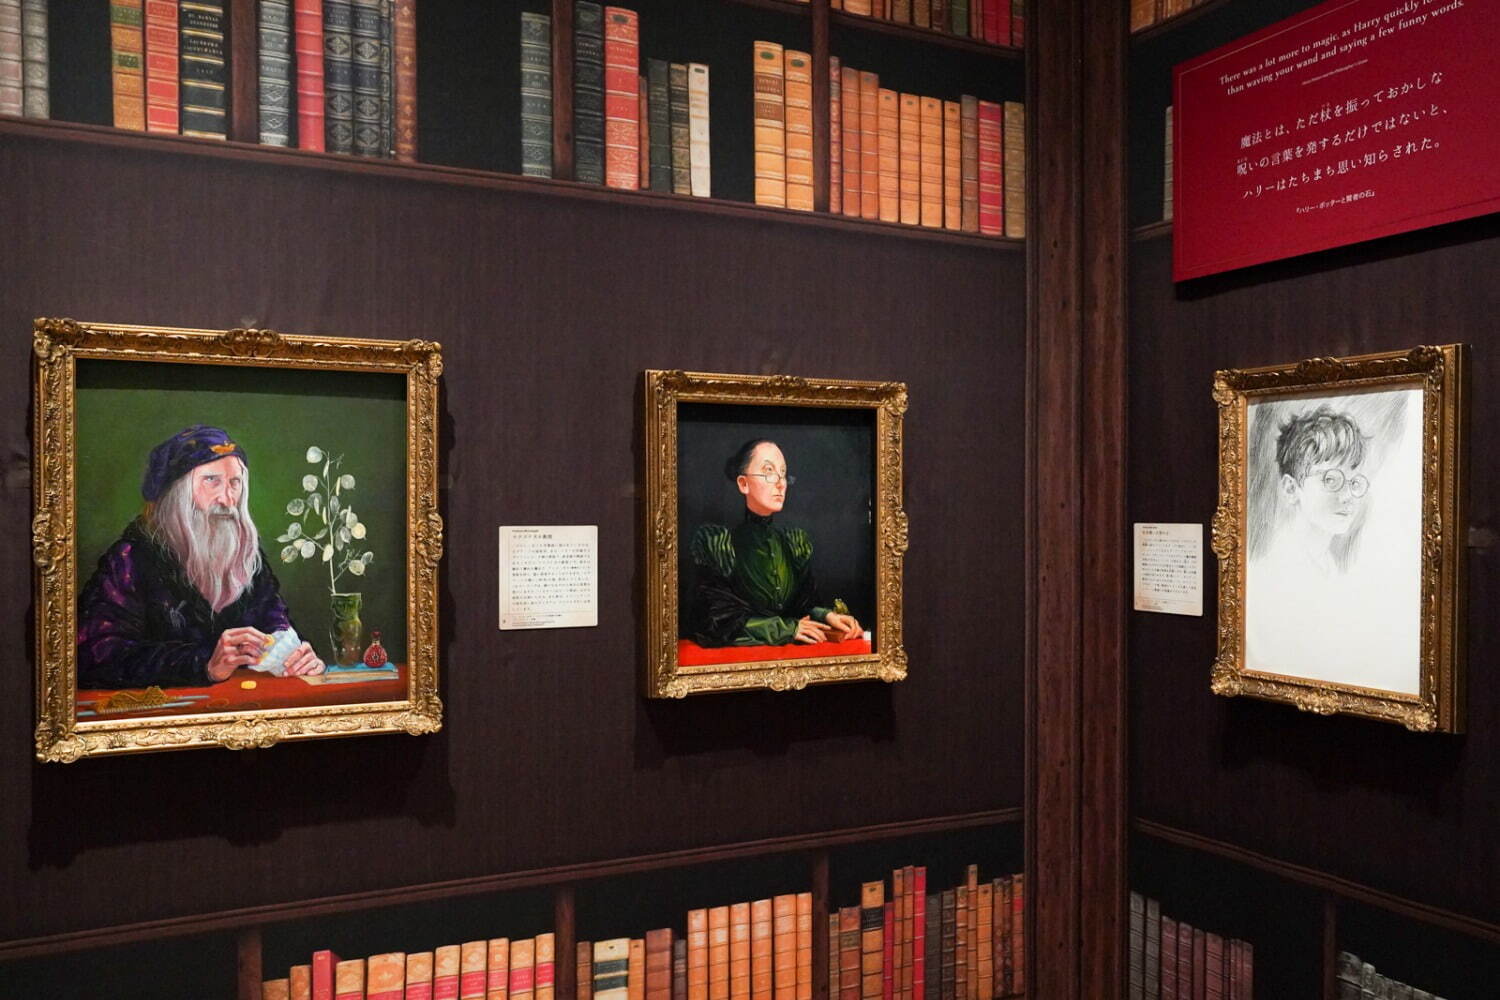 (左から) ジム・ケイ《アルバス・パーシバル・ウルフリック・ブライアン・ダンブルドア教授の肖像》、
ジム・ケイ《ミネルバ・マクゴナガル教授の肖像》、ジム・ケイ《ハリー・ポッターの肖像のスケッチ》
すべてブルームズベリー社蔵